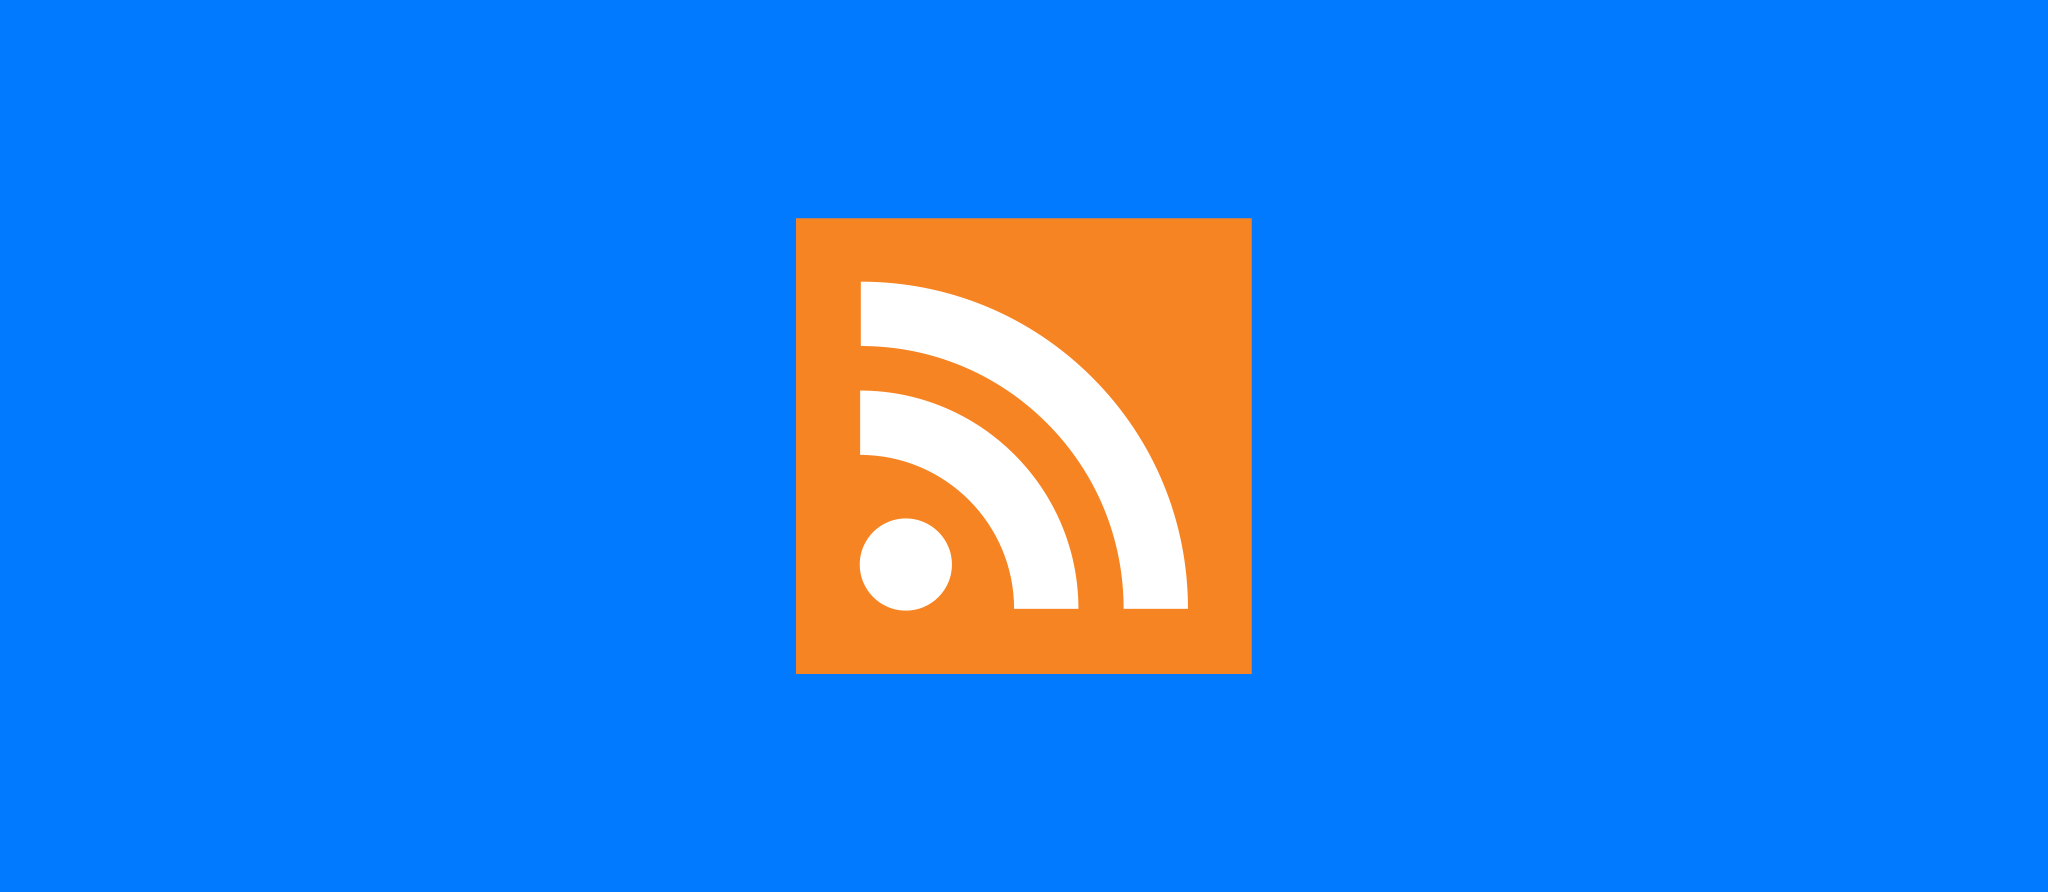 RSS Feeds – Was ist das? Wie nutzte ich es?